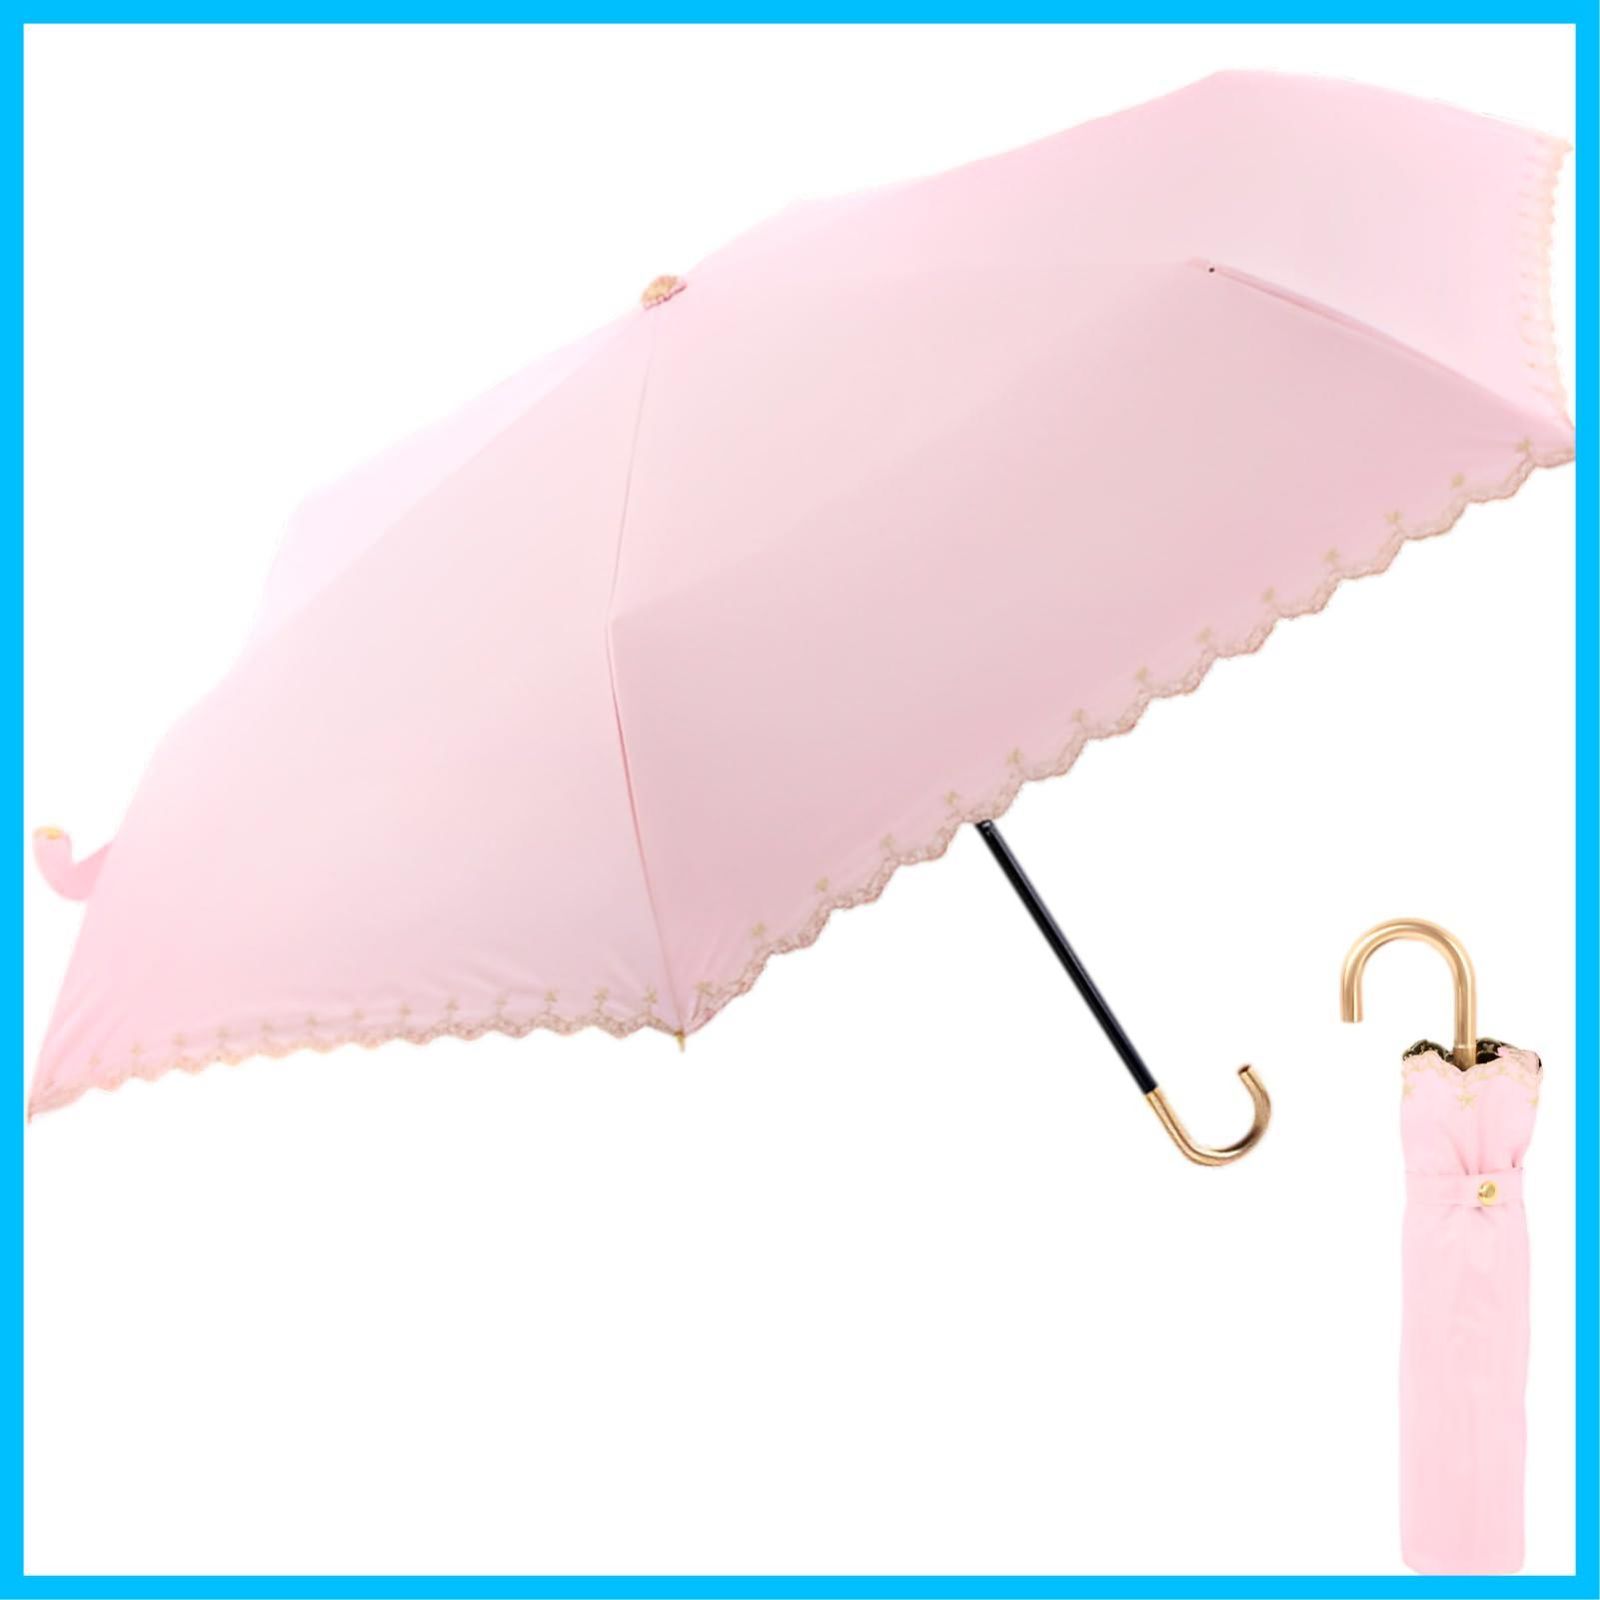 【色:グリーン】Formemory 猫の肉球傘 日傘 折りたたみ傘 カラー 6色